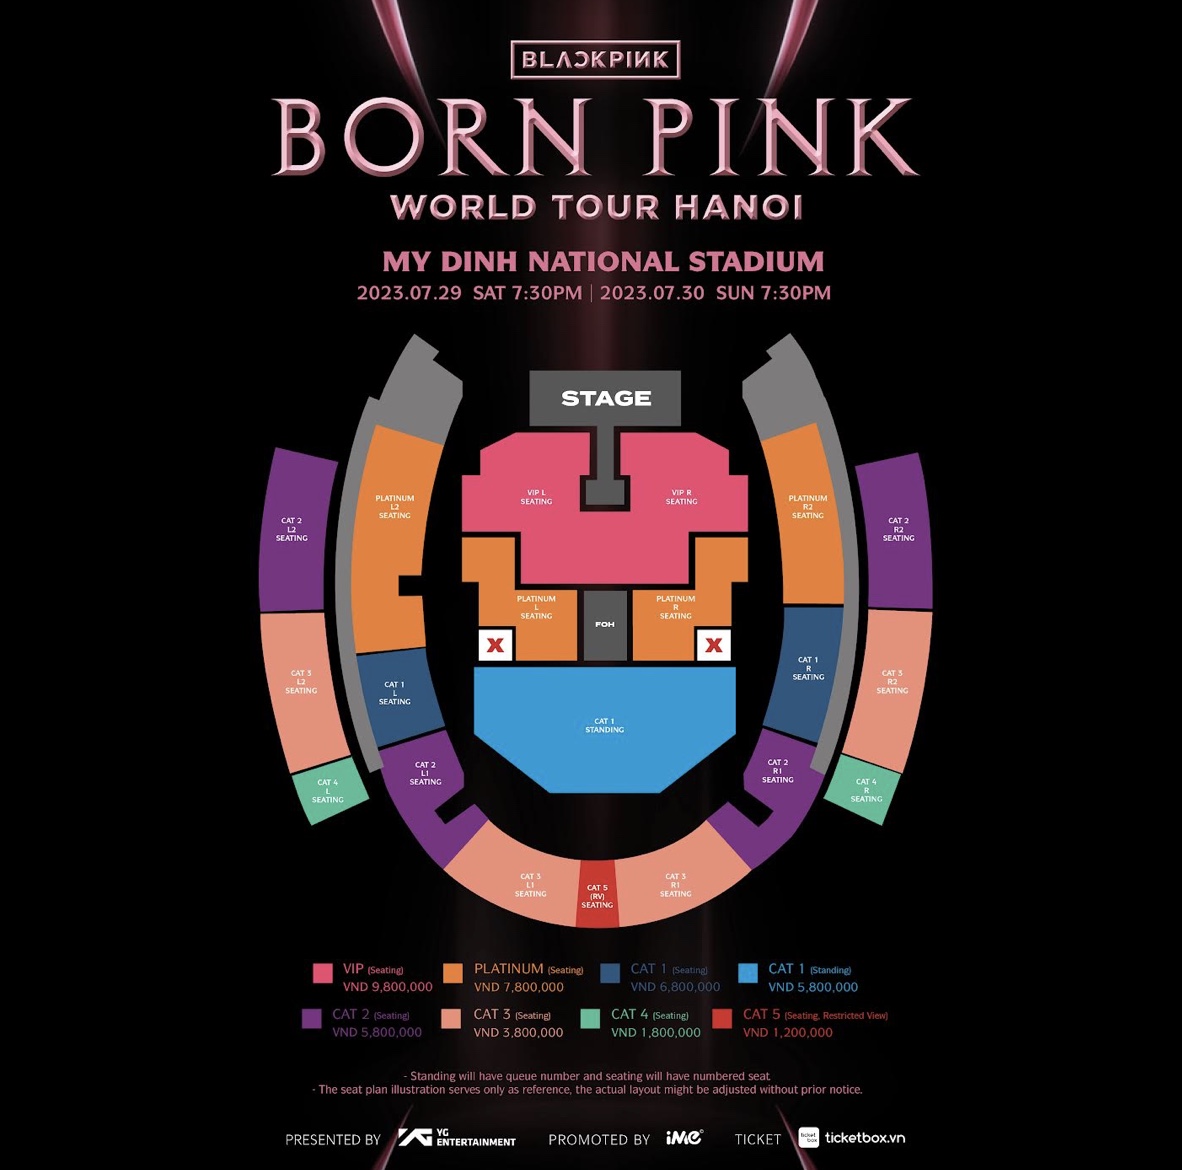 Công bố giá vé và sơ đồ sân khấu chính thức của concert Blackpink tại Hà Nội  - Ảnh 2.